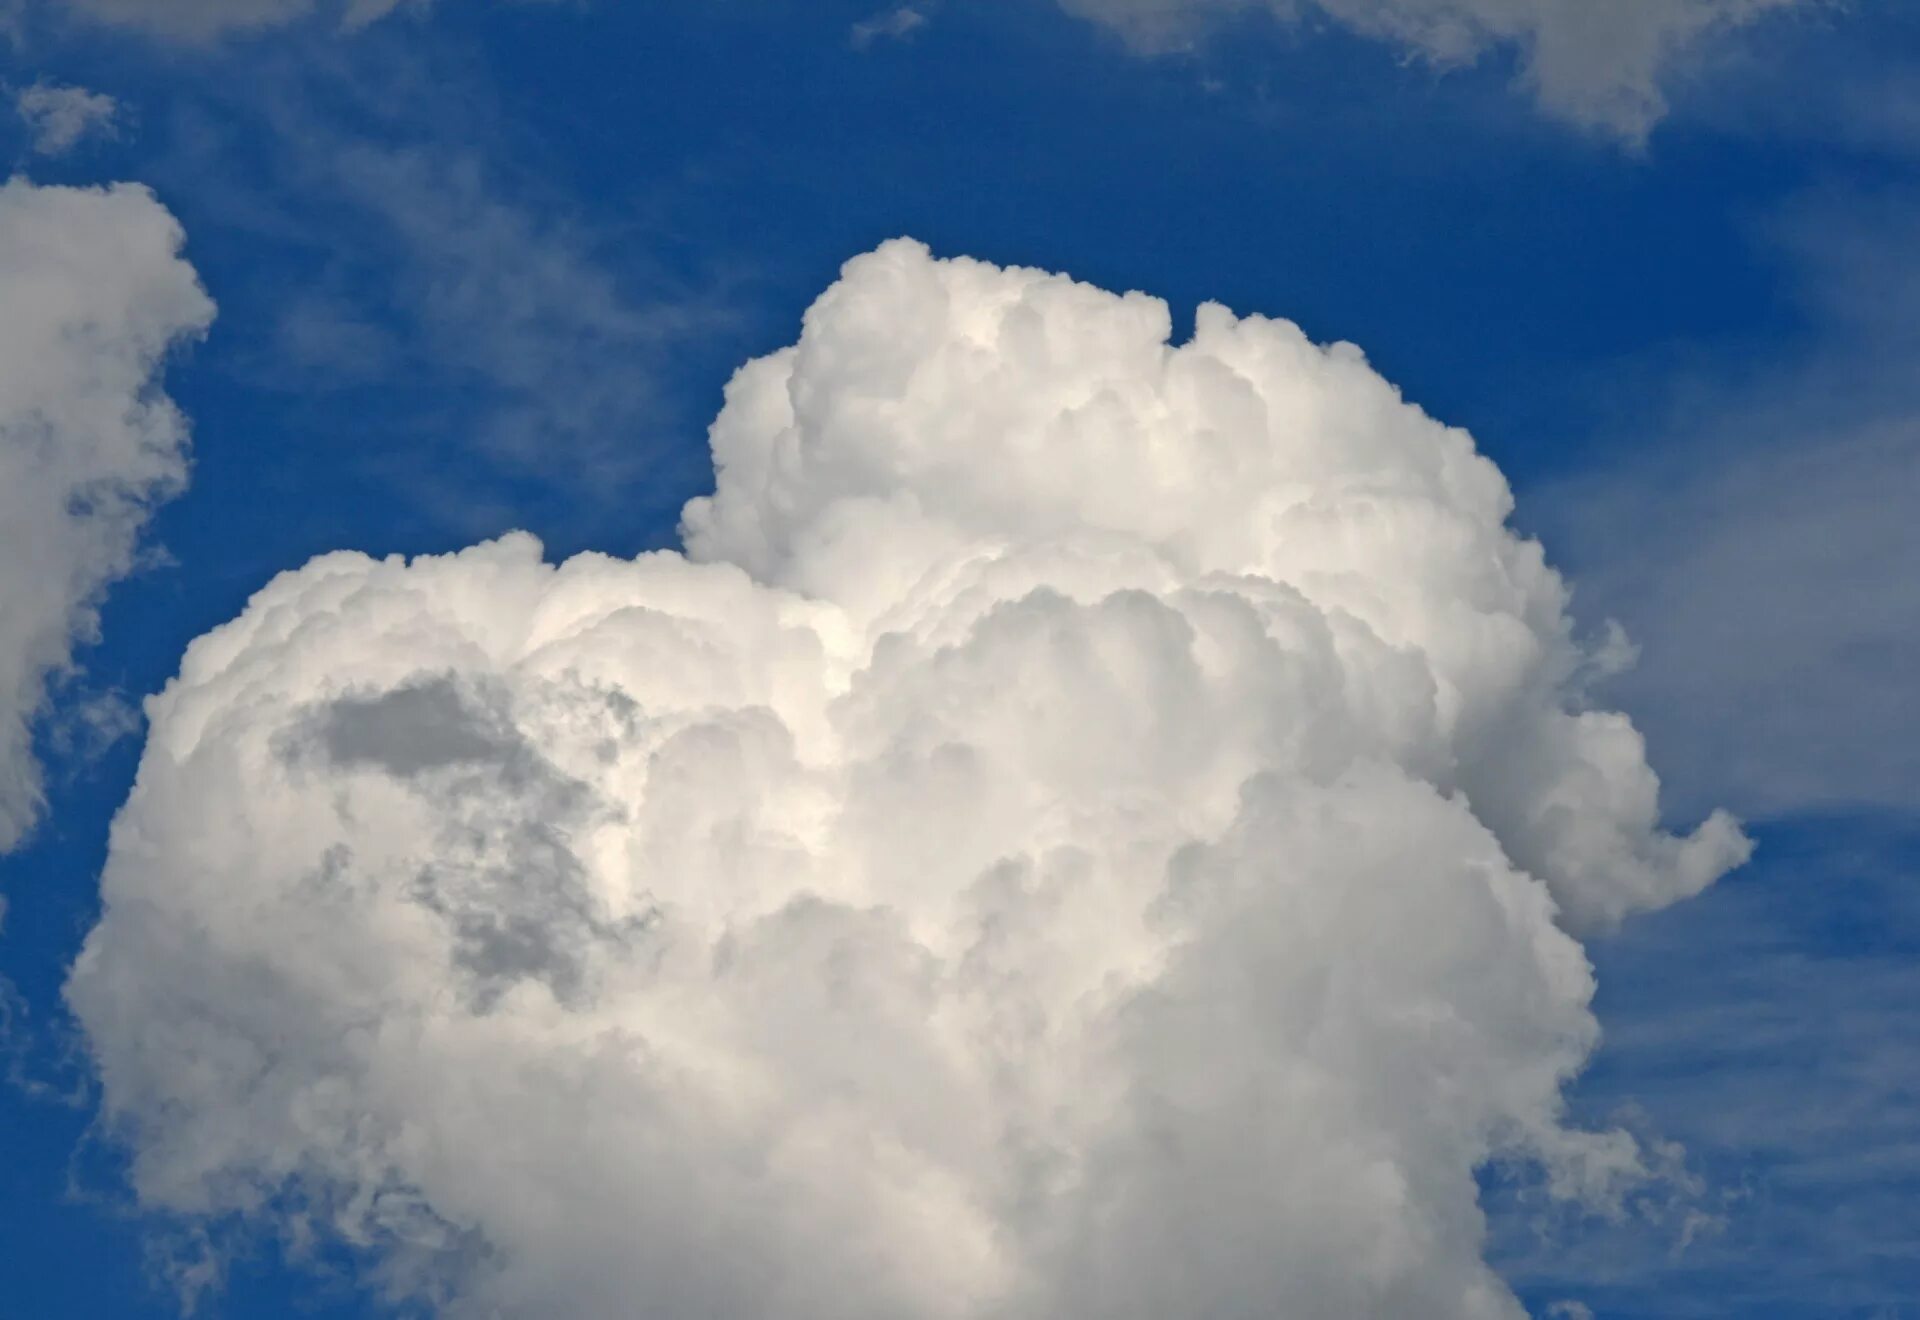 Хенун облако. Облака. Разные облака. Пушистые облака. Сердце из облаков.